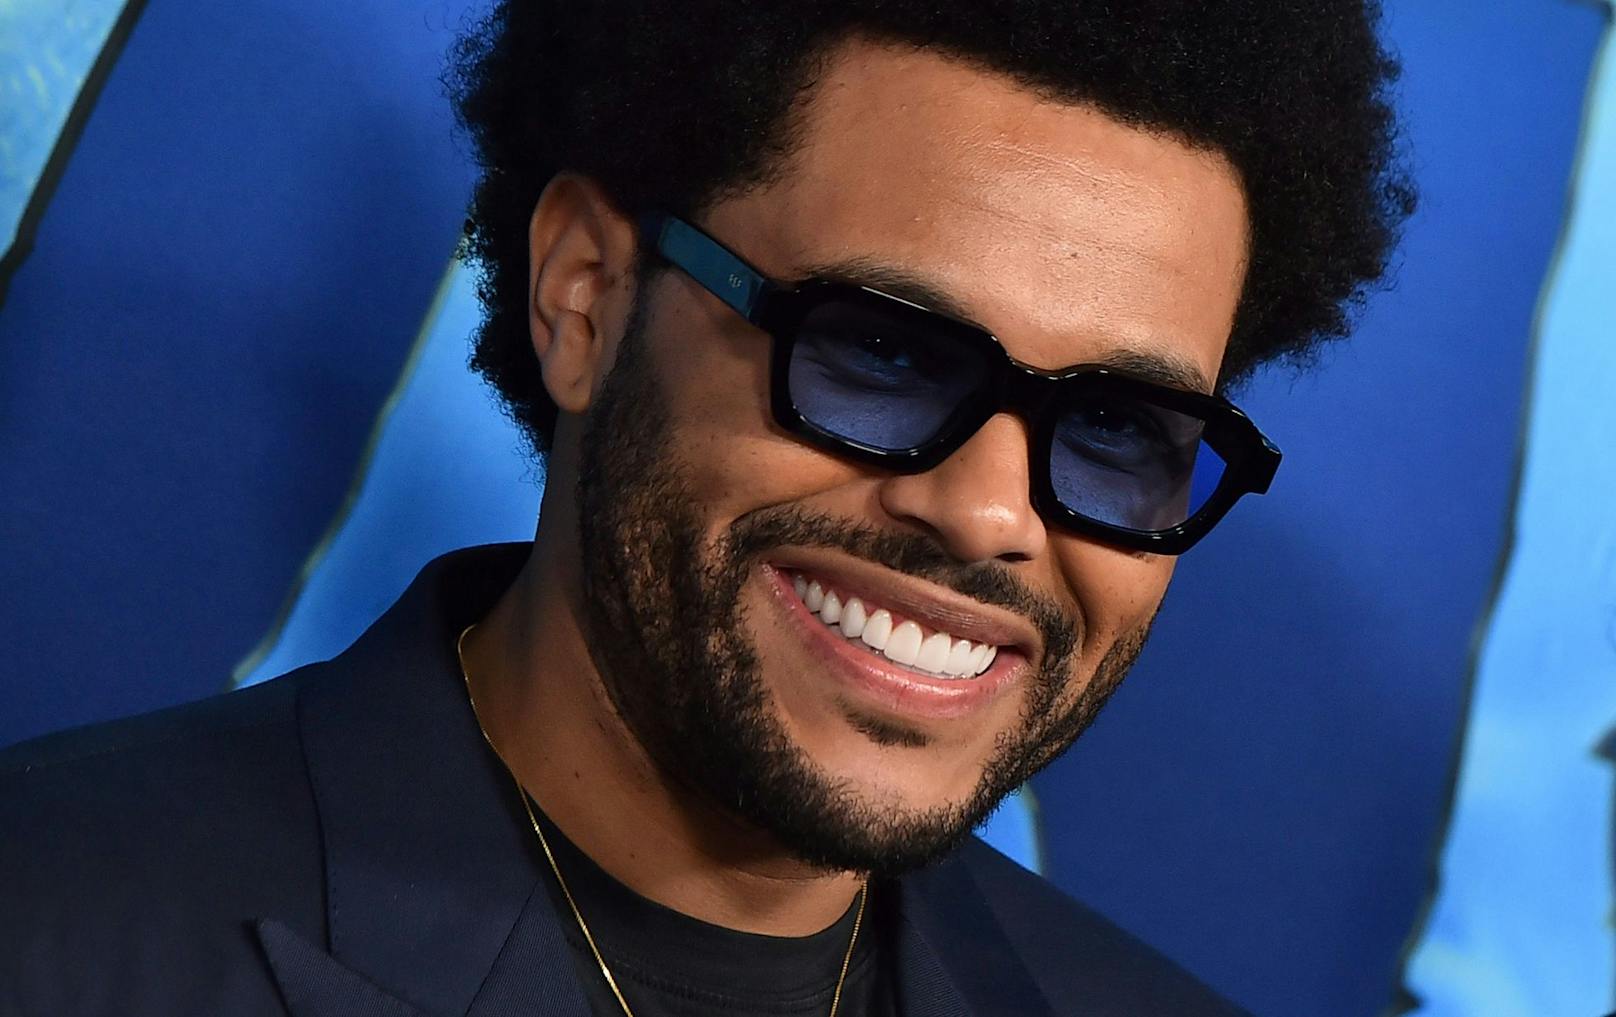 Offiziell: The Weeknd ist beliebtester Musiker der Welt